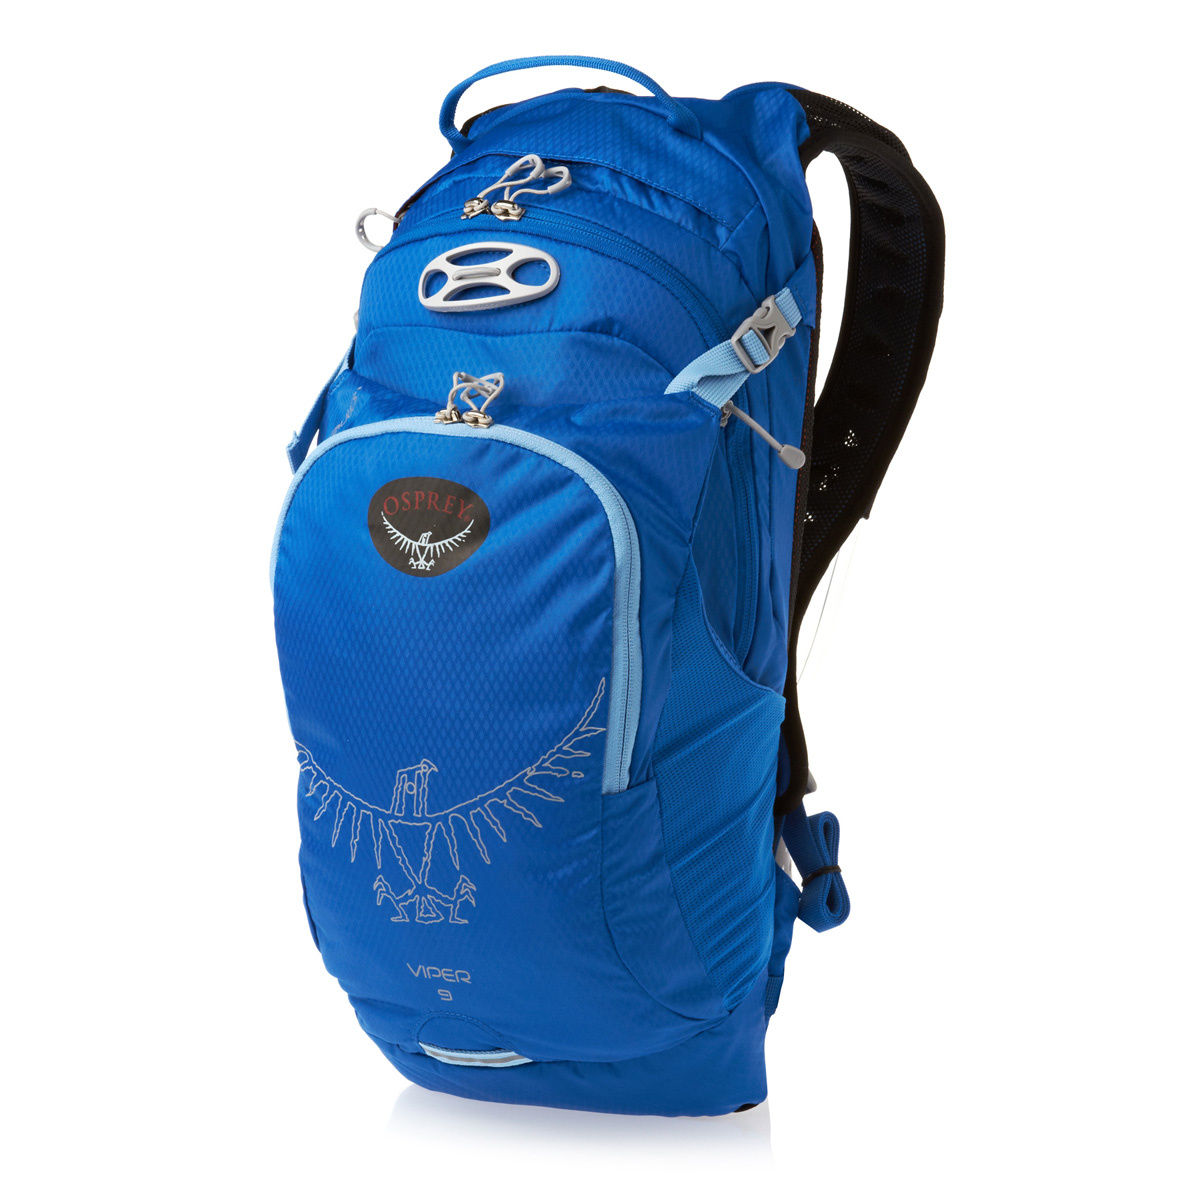 Osprey - Спортивный рюкзак с питьевой системой Viper 9